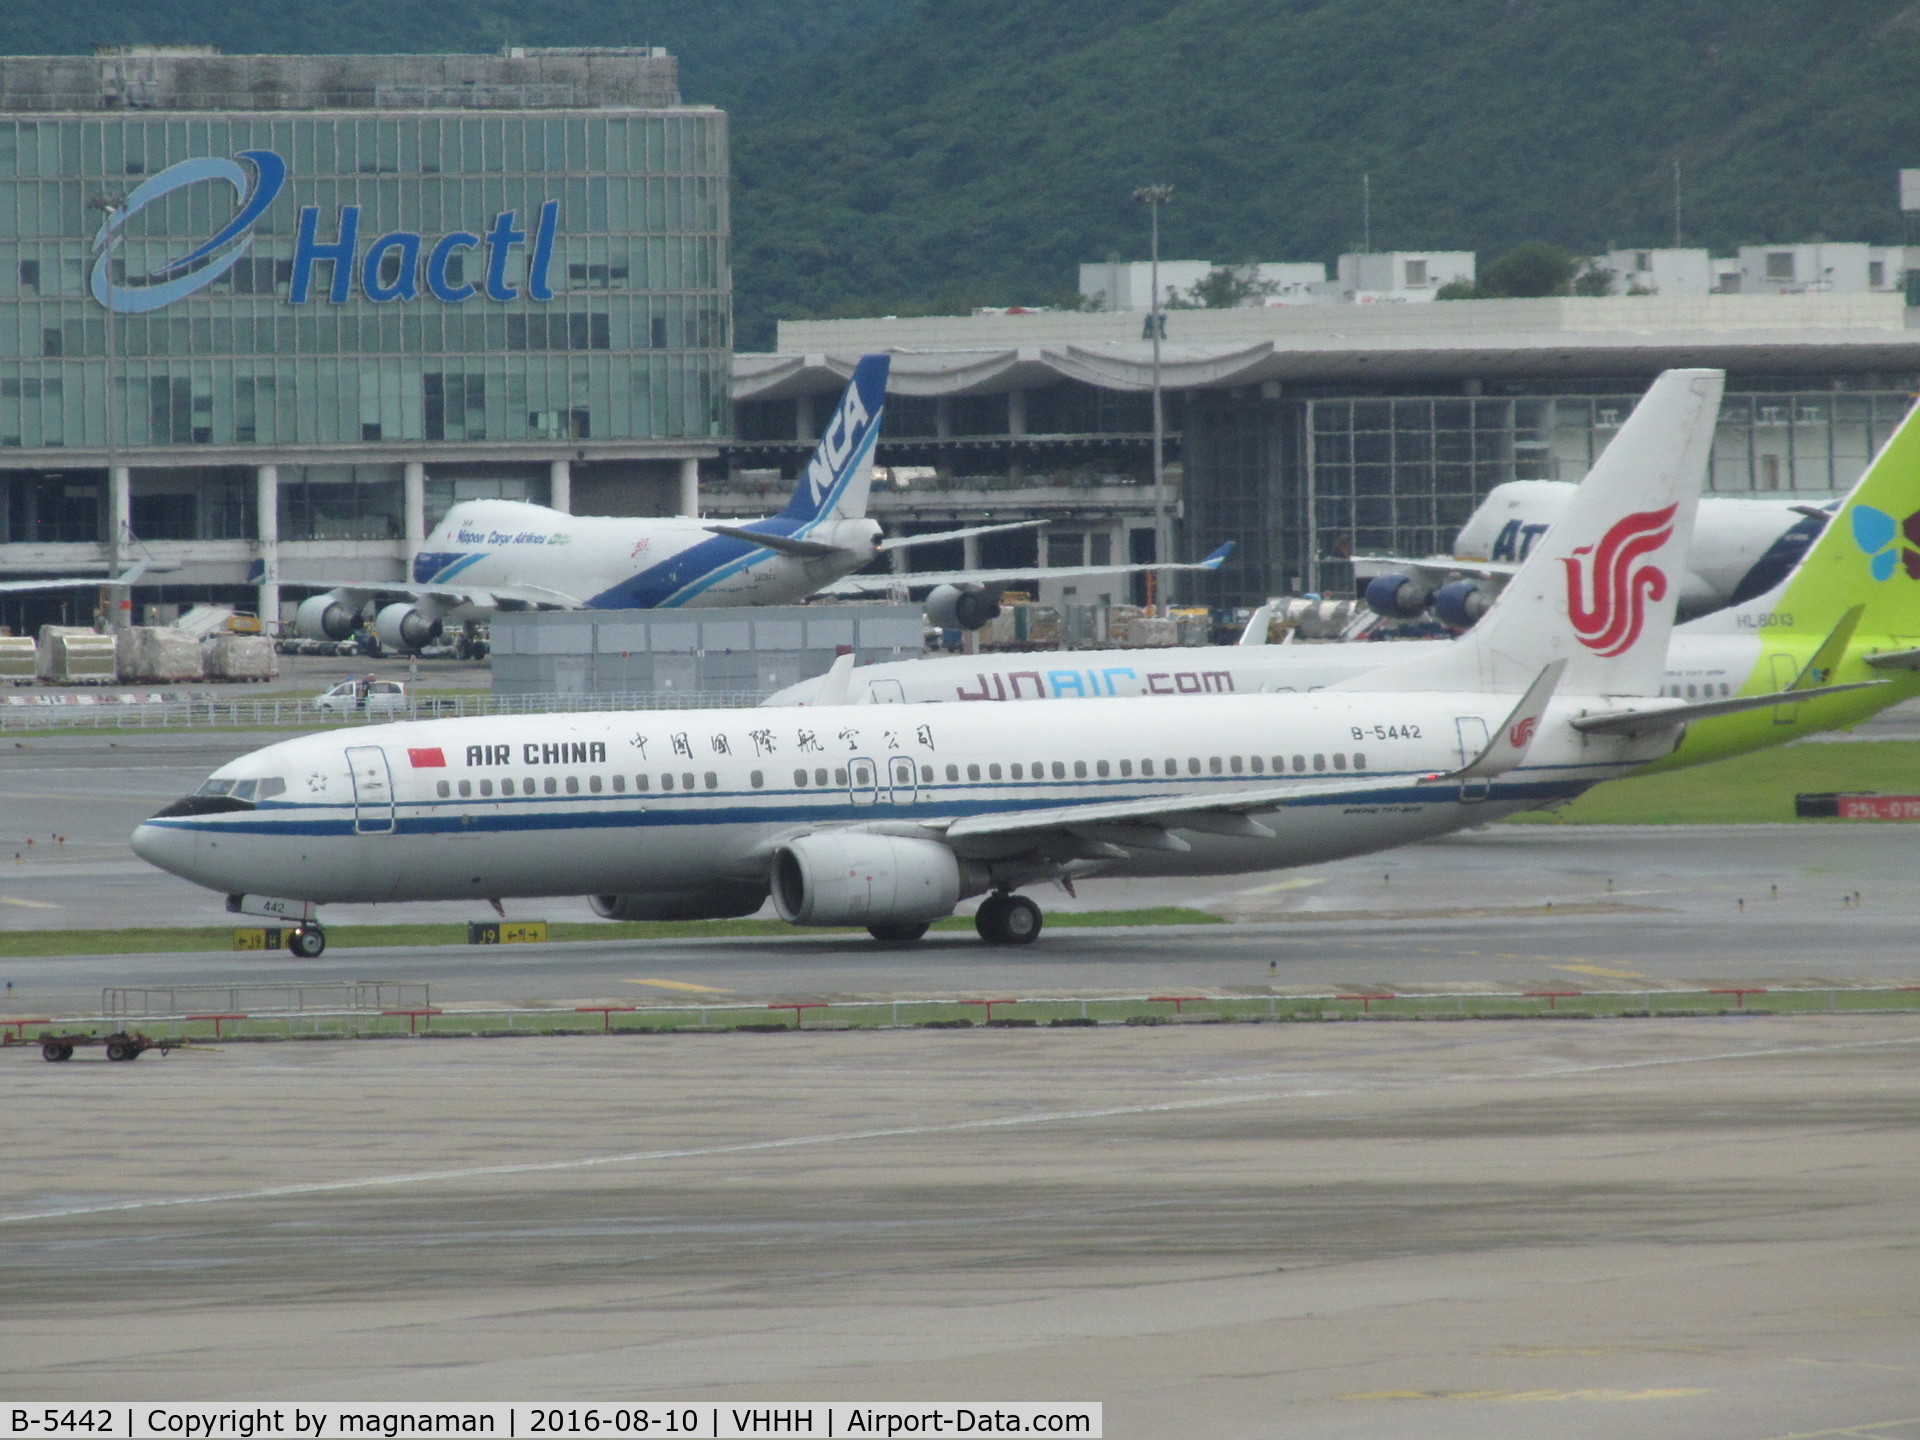 B-5442, 2009 Boeing 737-89L C/N 36745, awaiting departure from HKG